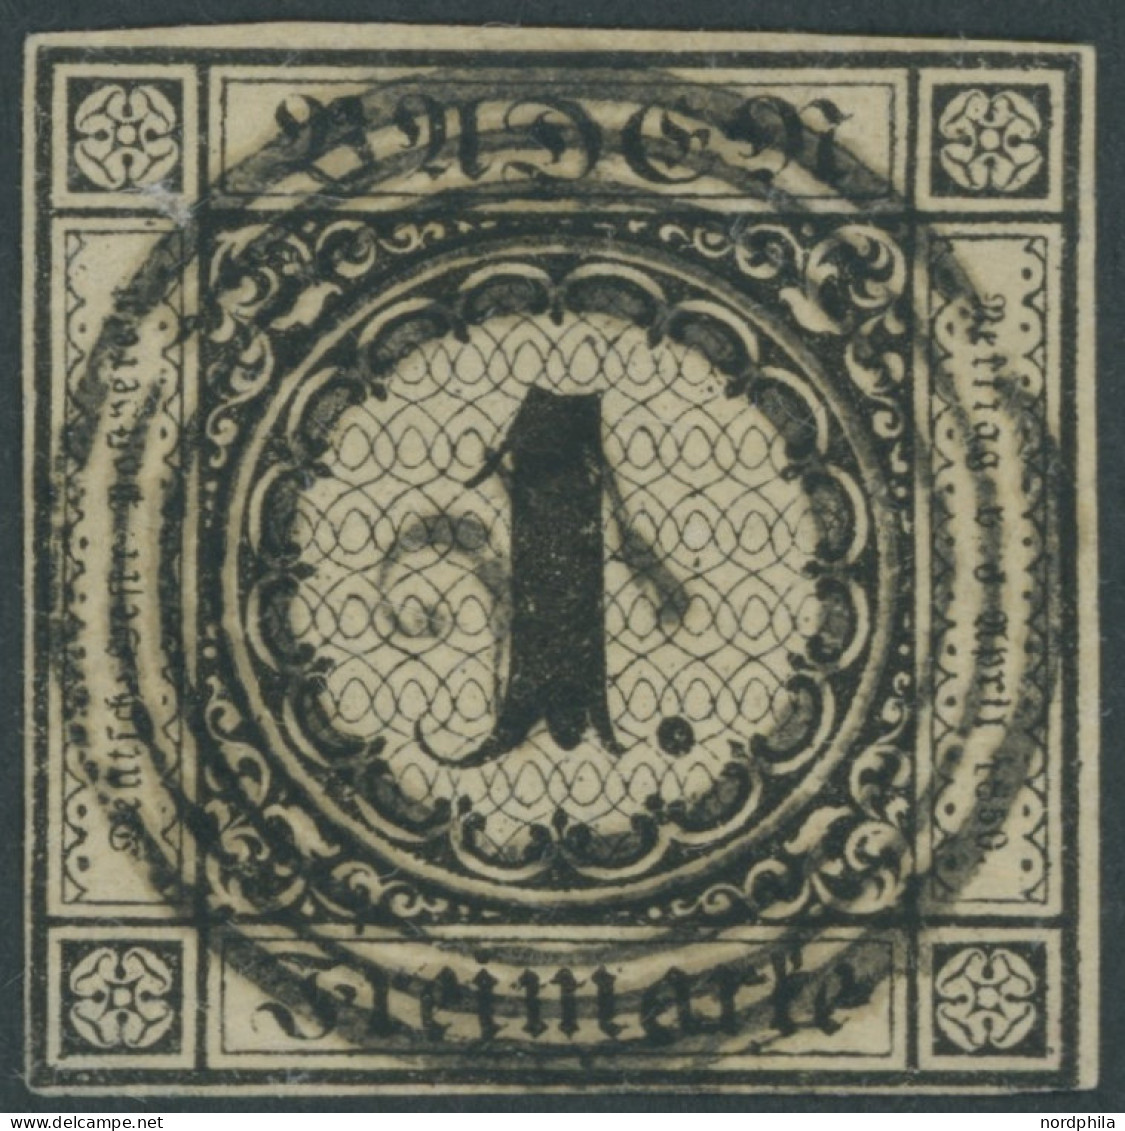 BADEN 1a O, 1851, 1 Kr. Schwarz Auf Sämisch, Zentrischer Nummernstempel 27, Untere Linke Ecke Etwas Hell Sonst Vollrandi - Used